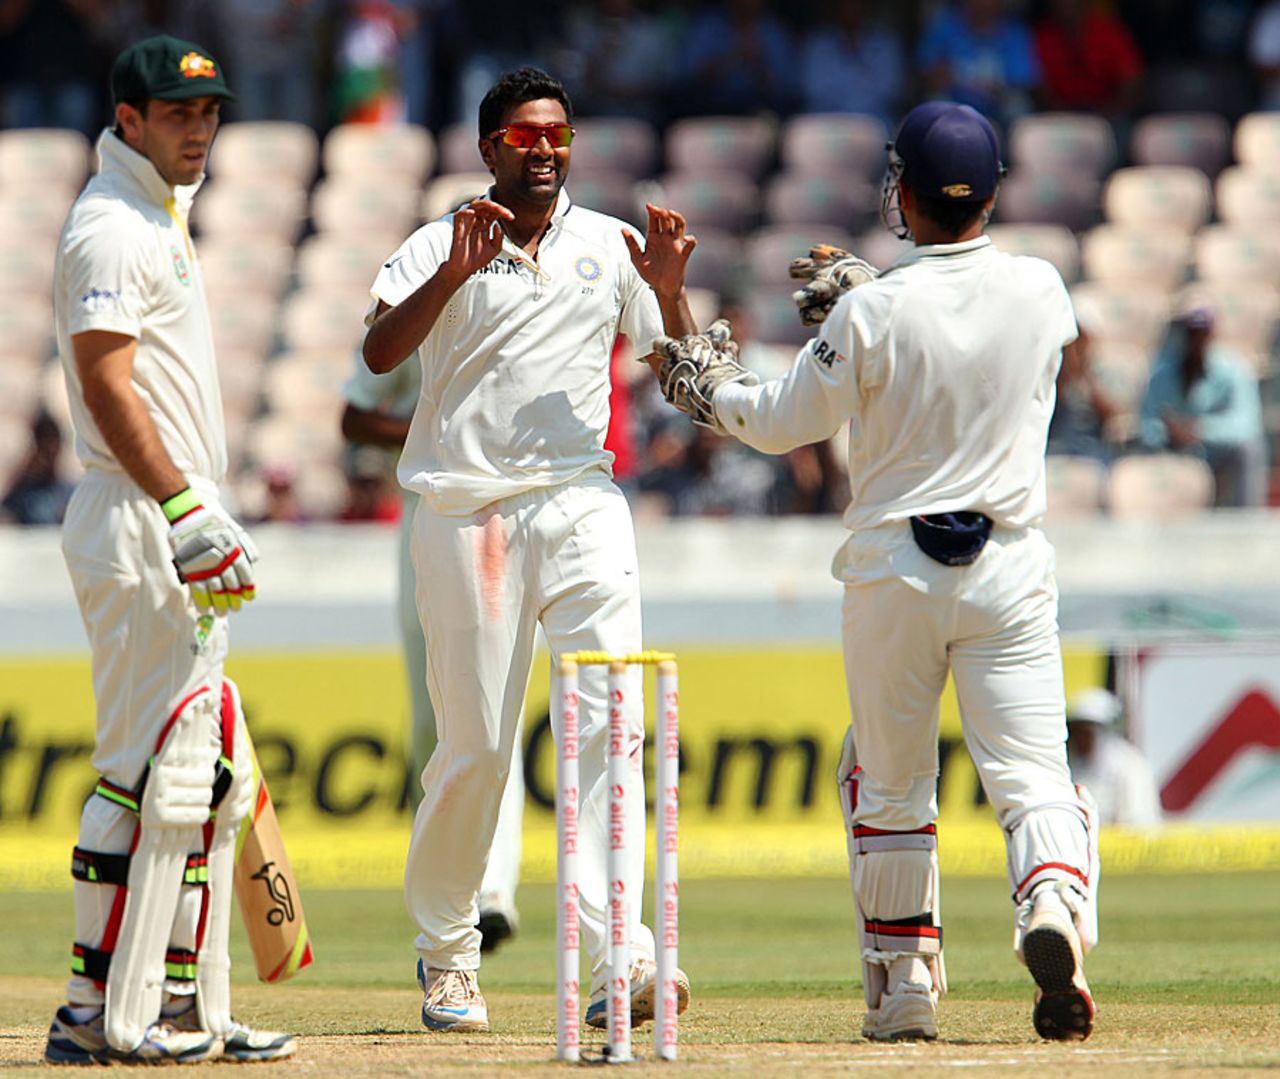 R Ashwin traps Glenn Maxwell lbw, India v Australia, 2nd Test, Hyderabad, 4th day, March 5, 2013